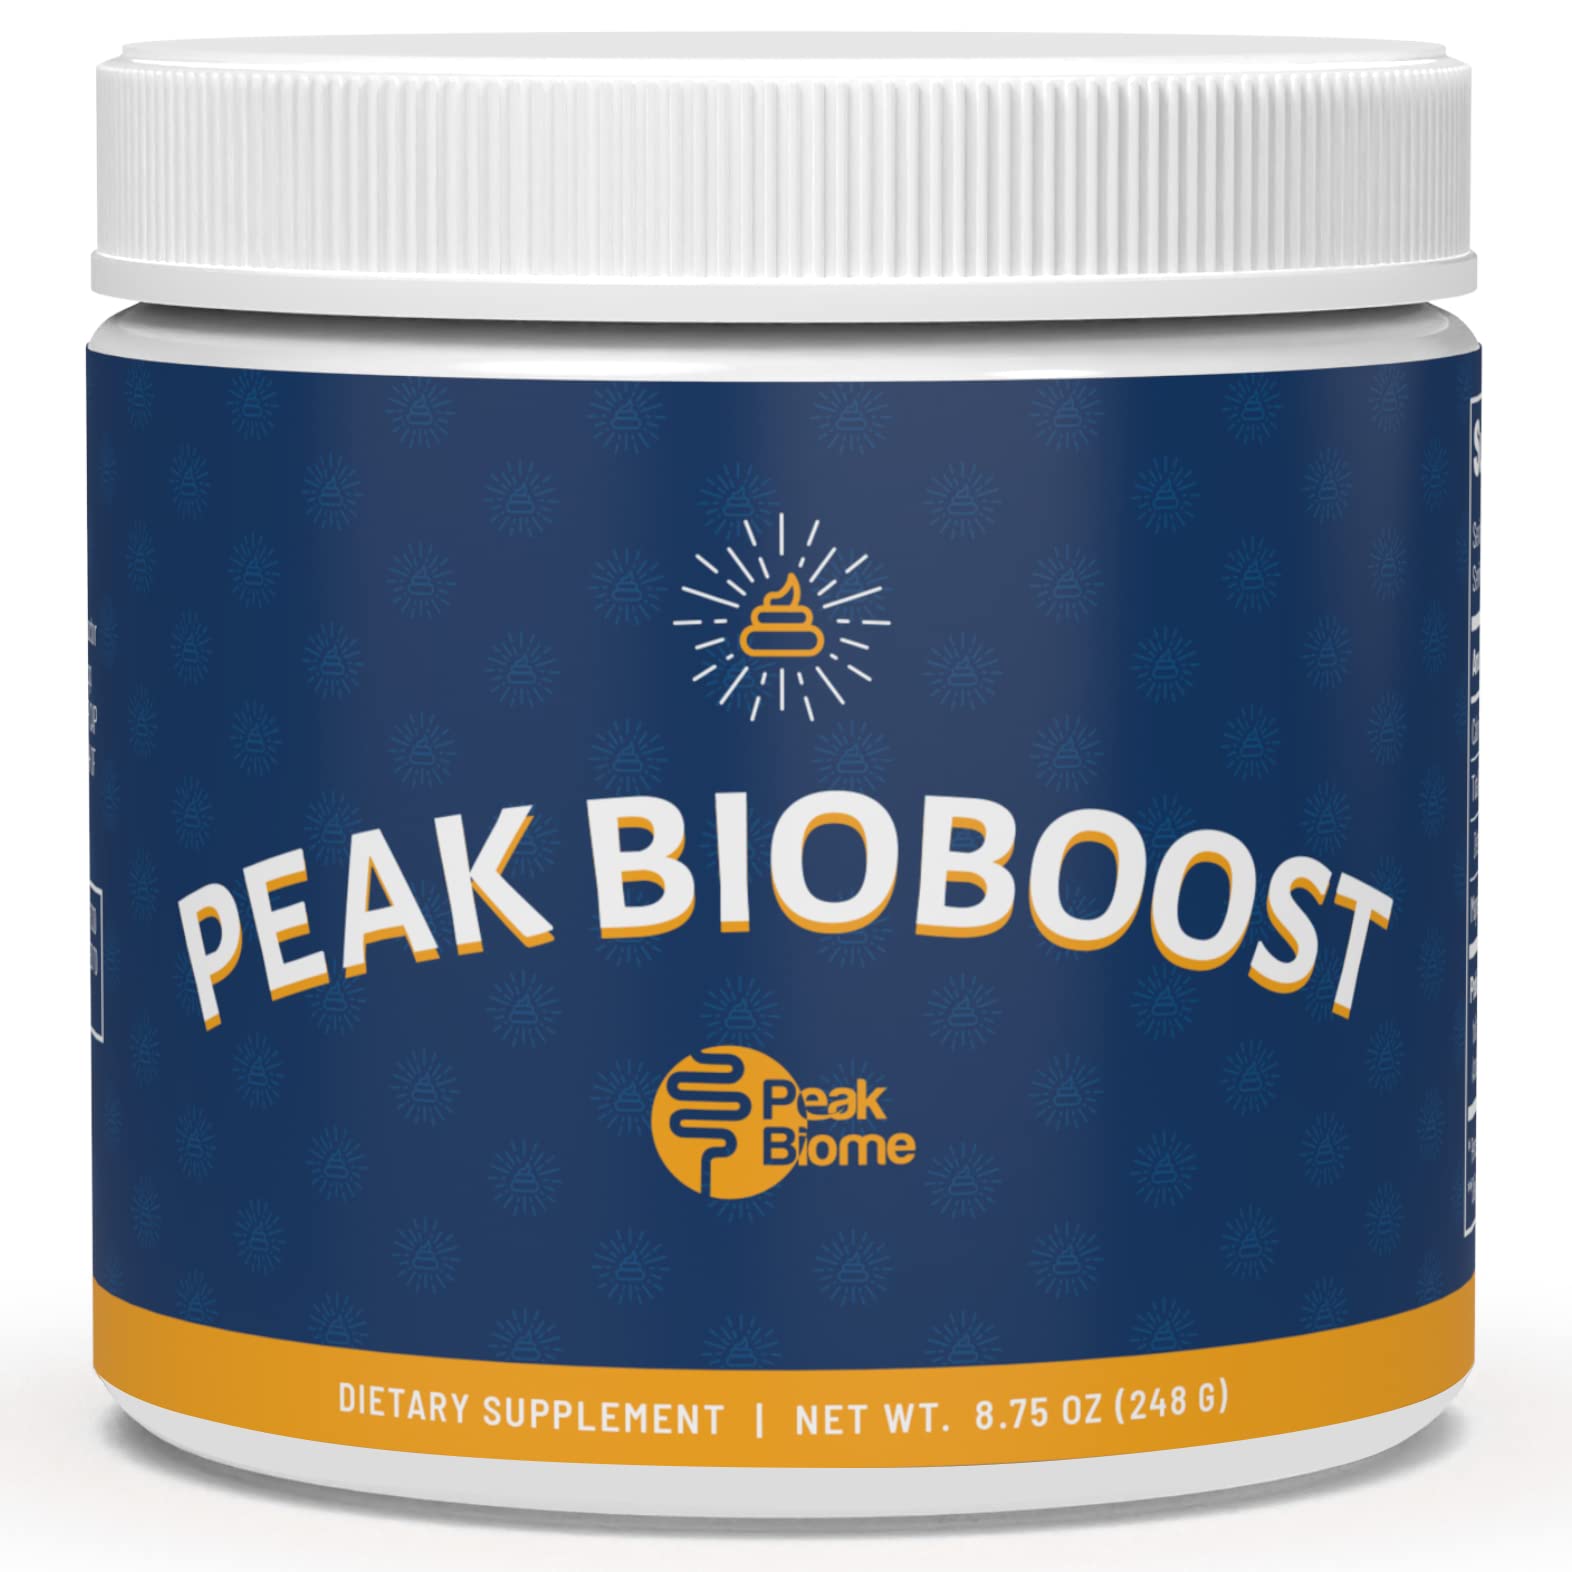 what is in peak bioboost